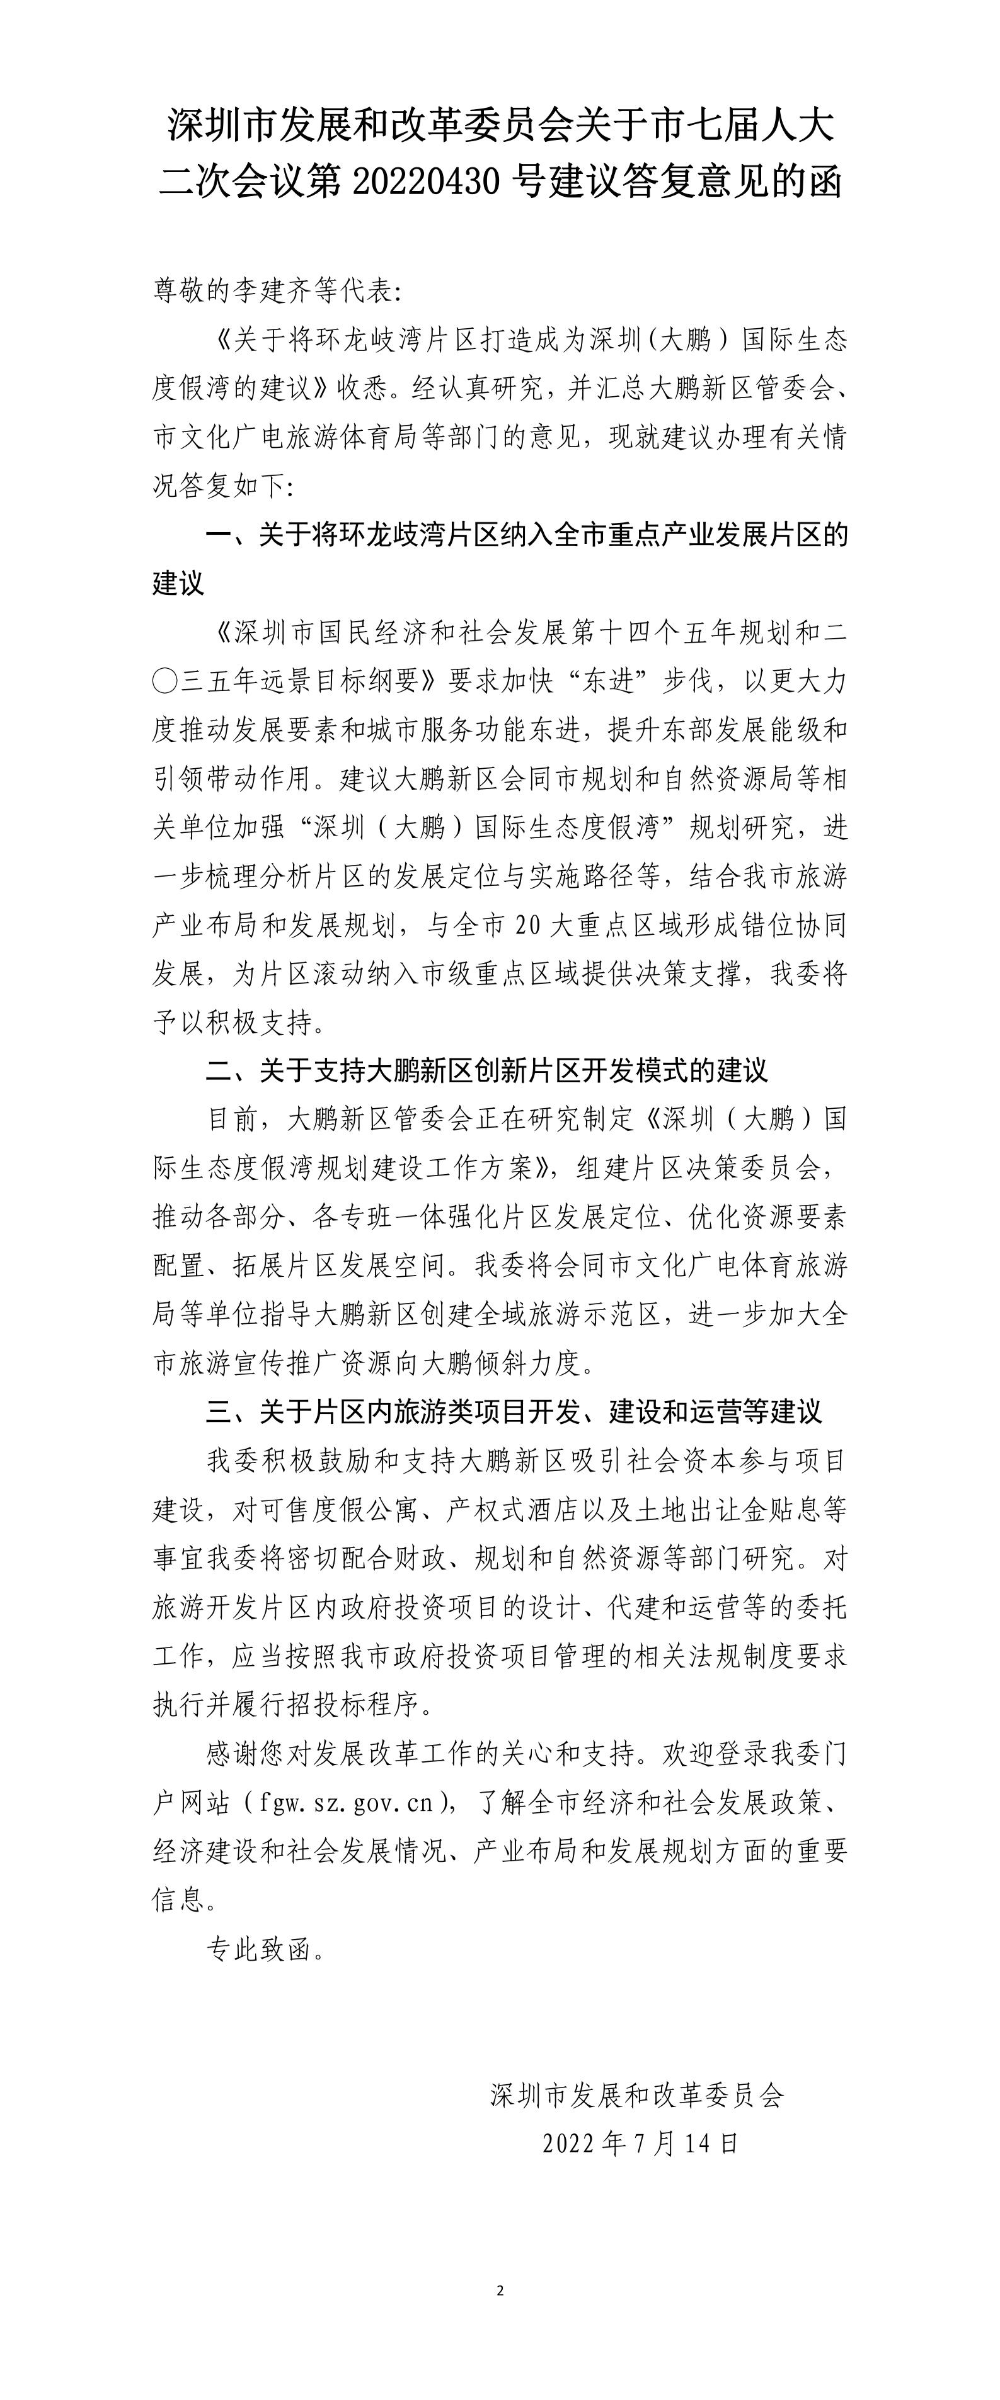 深圳市发展和改革委员会关于市七届人大二次会议第20220430号建议答复意见的函.jpg